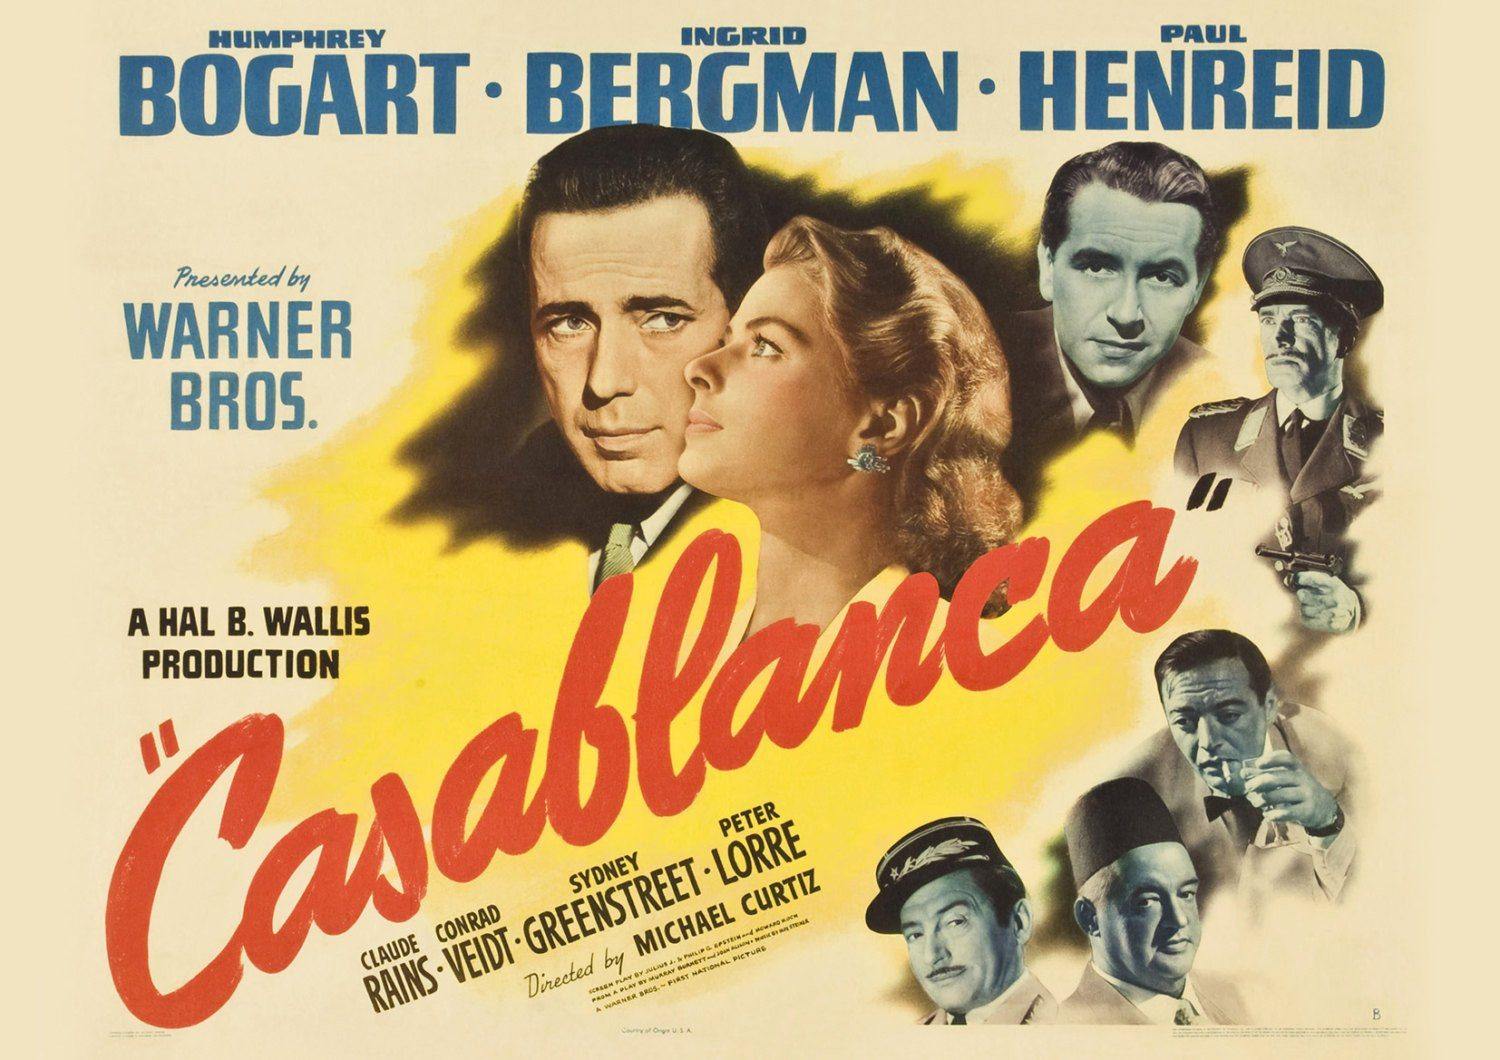 CASABLANCA MOVIE POSTER: Classic Bogart Film Art Reprint - Pimlico Prints